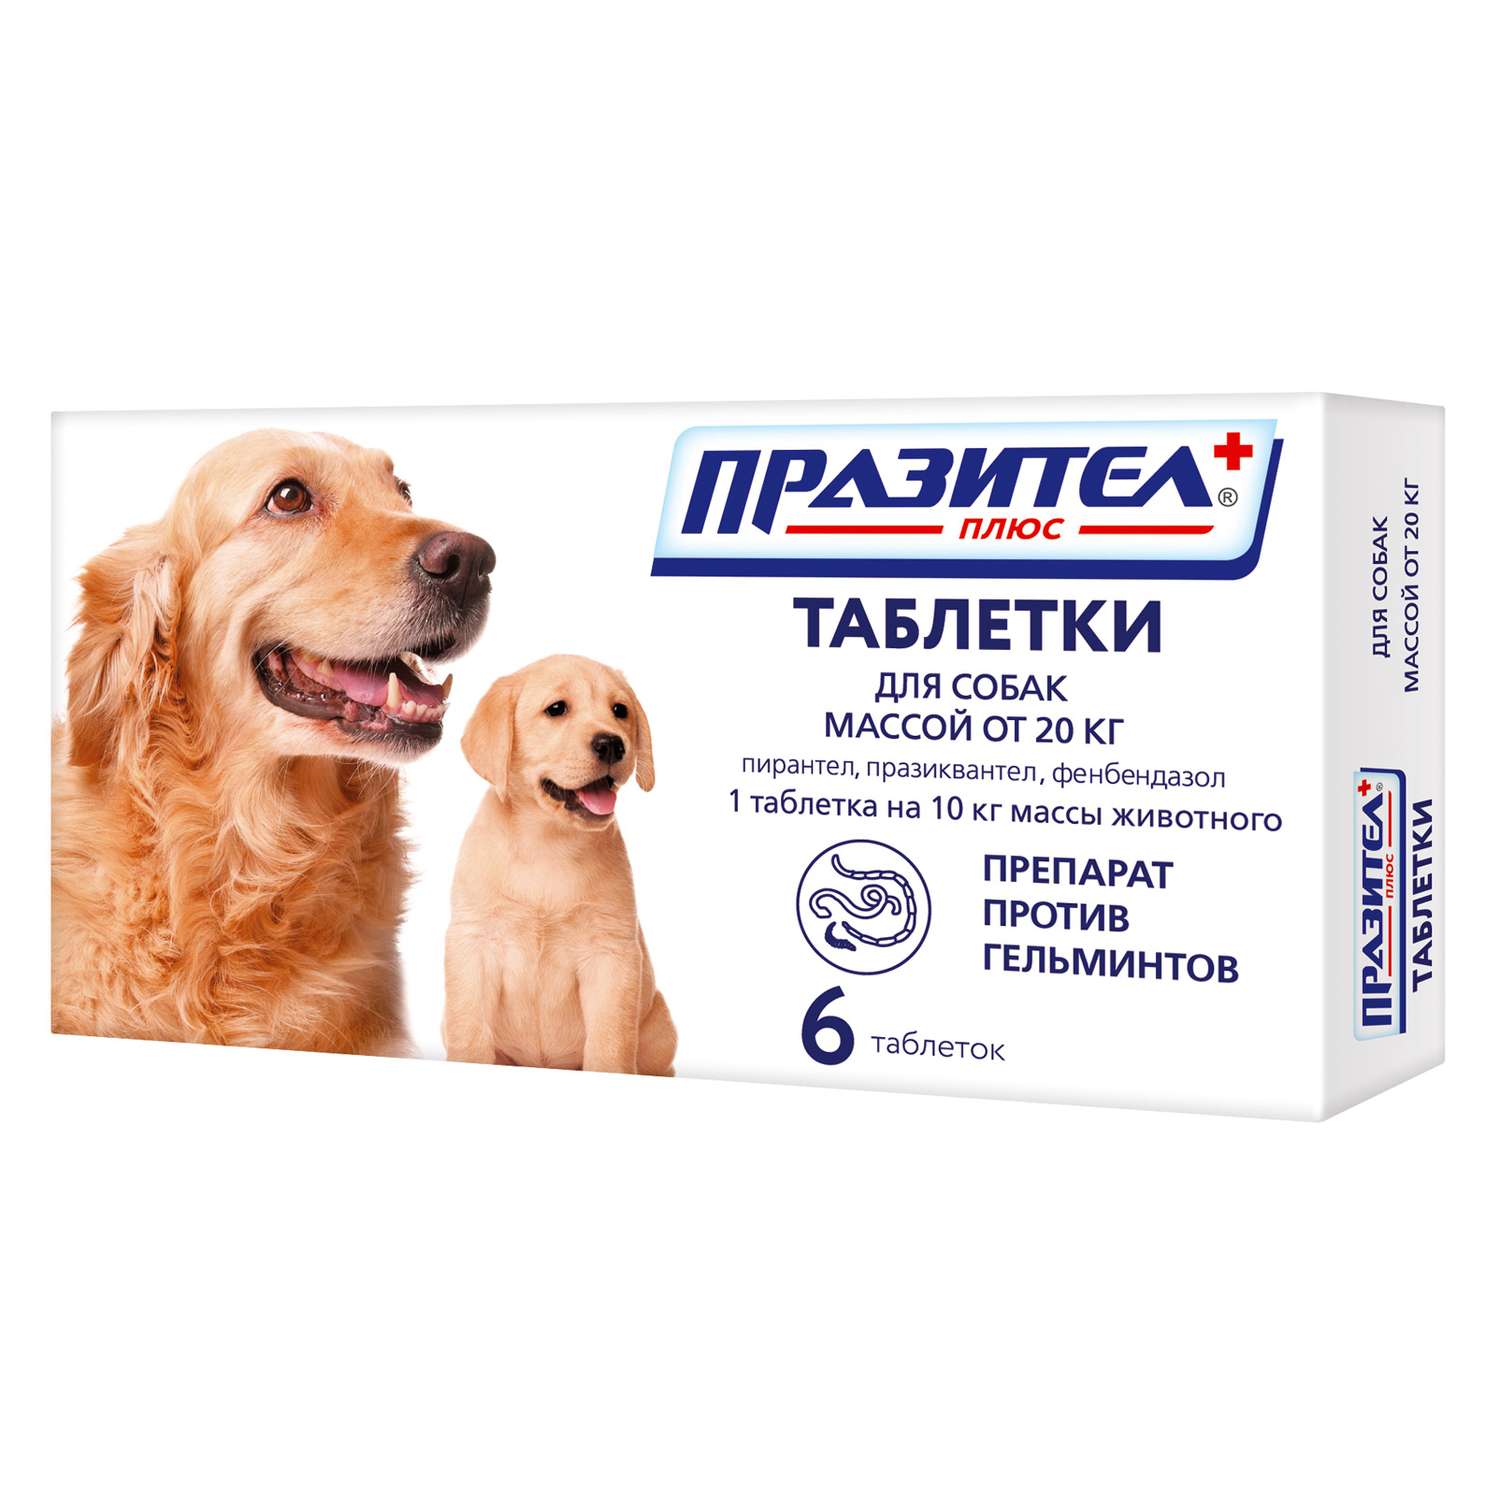 Препарат противопаразитный для собак и щенков Астрафарм Празител плюс средних и крупных пород 6таблеток - фото 1